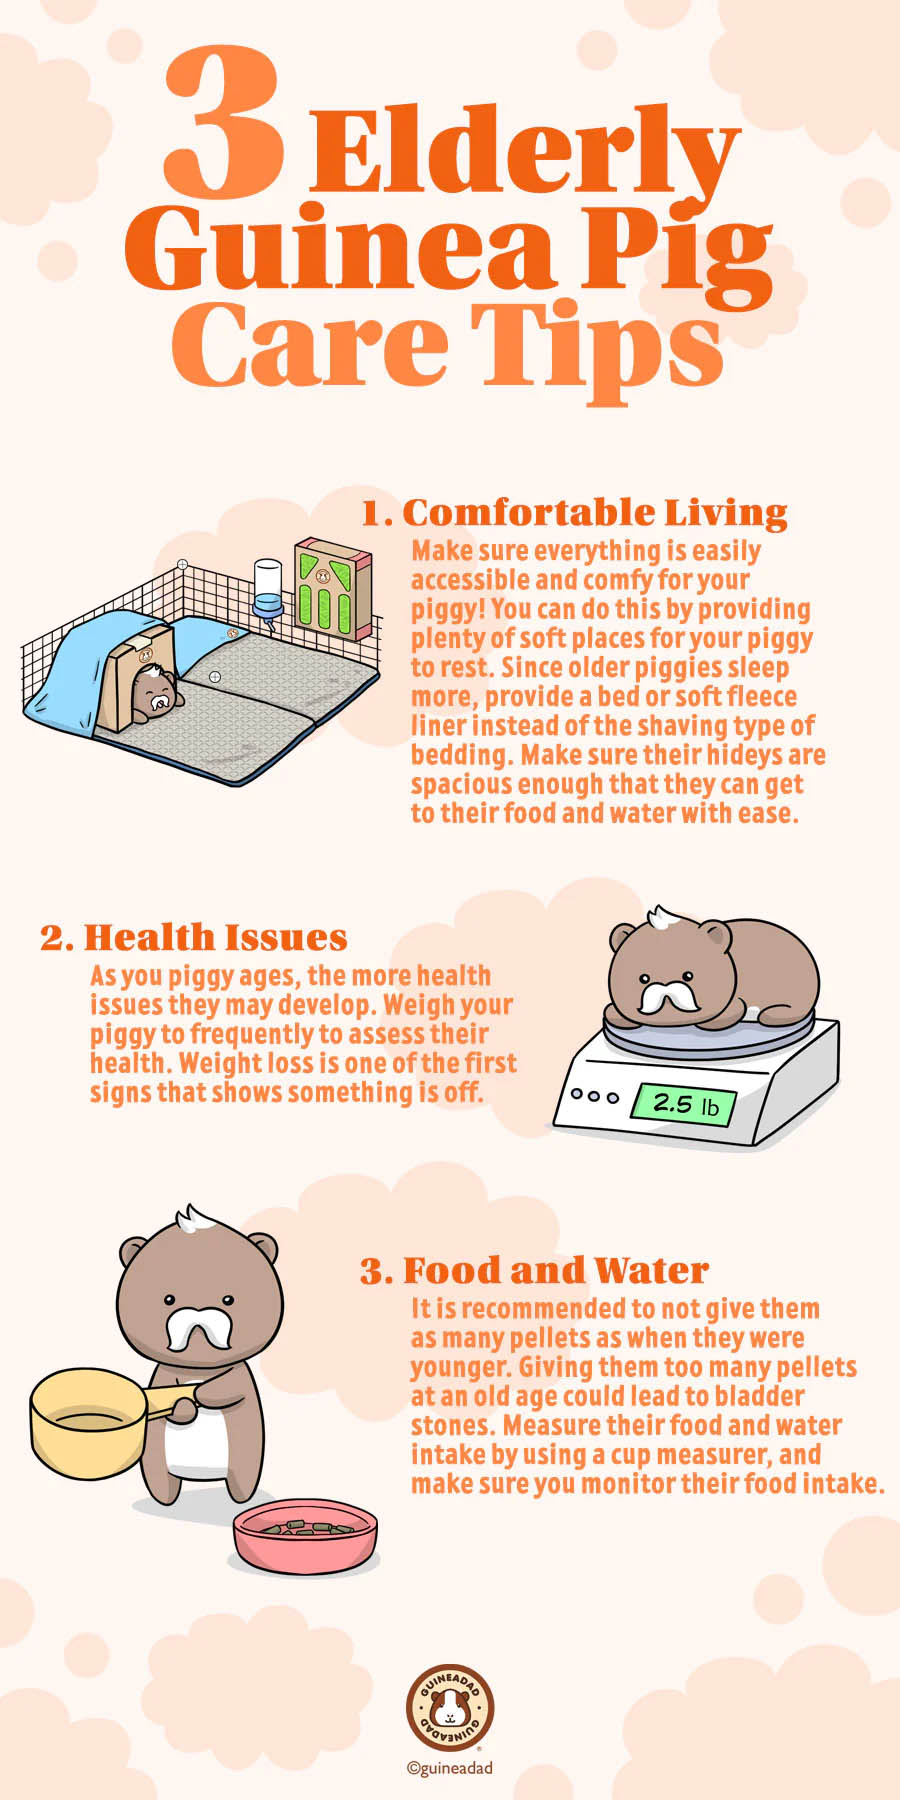 3 Elderly Guinea Pig Care Tips